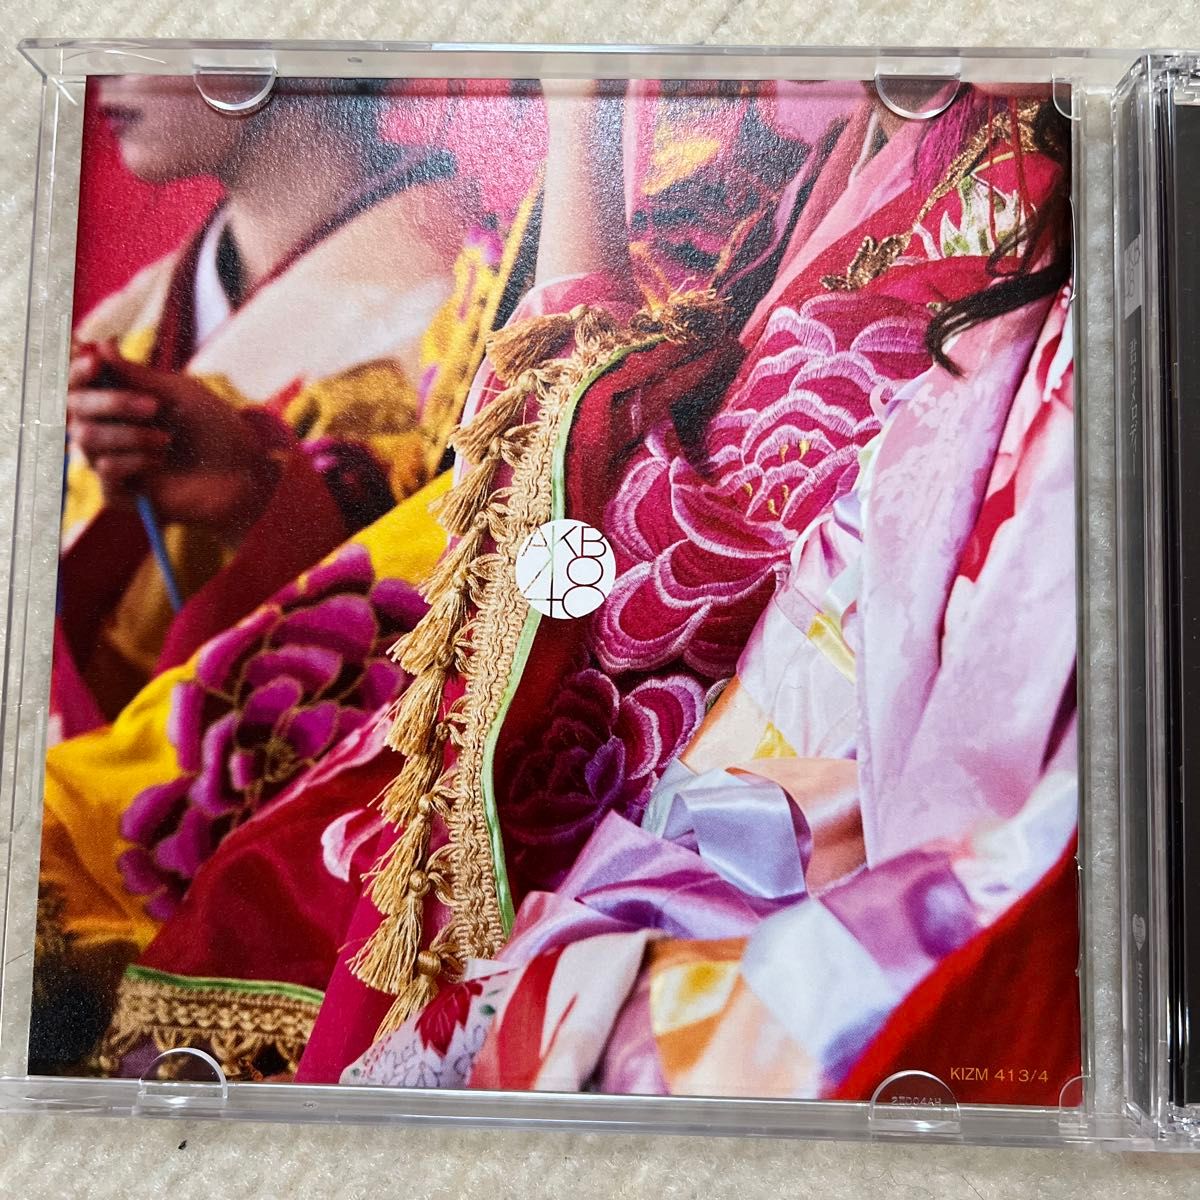 [国内盤CD] AKB48/君はメロディー (Type A) [CD+DVD] [2枚組] 生写真付き